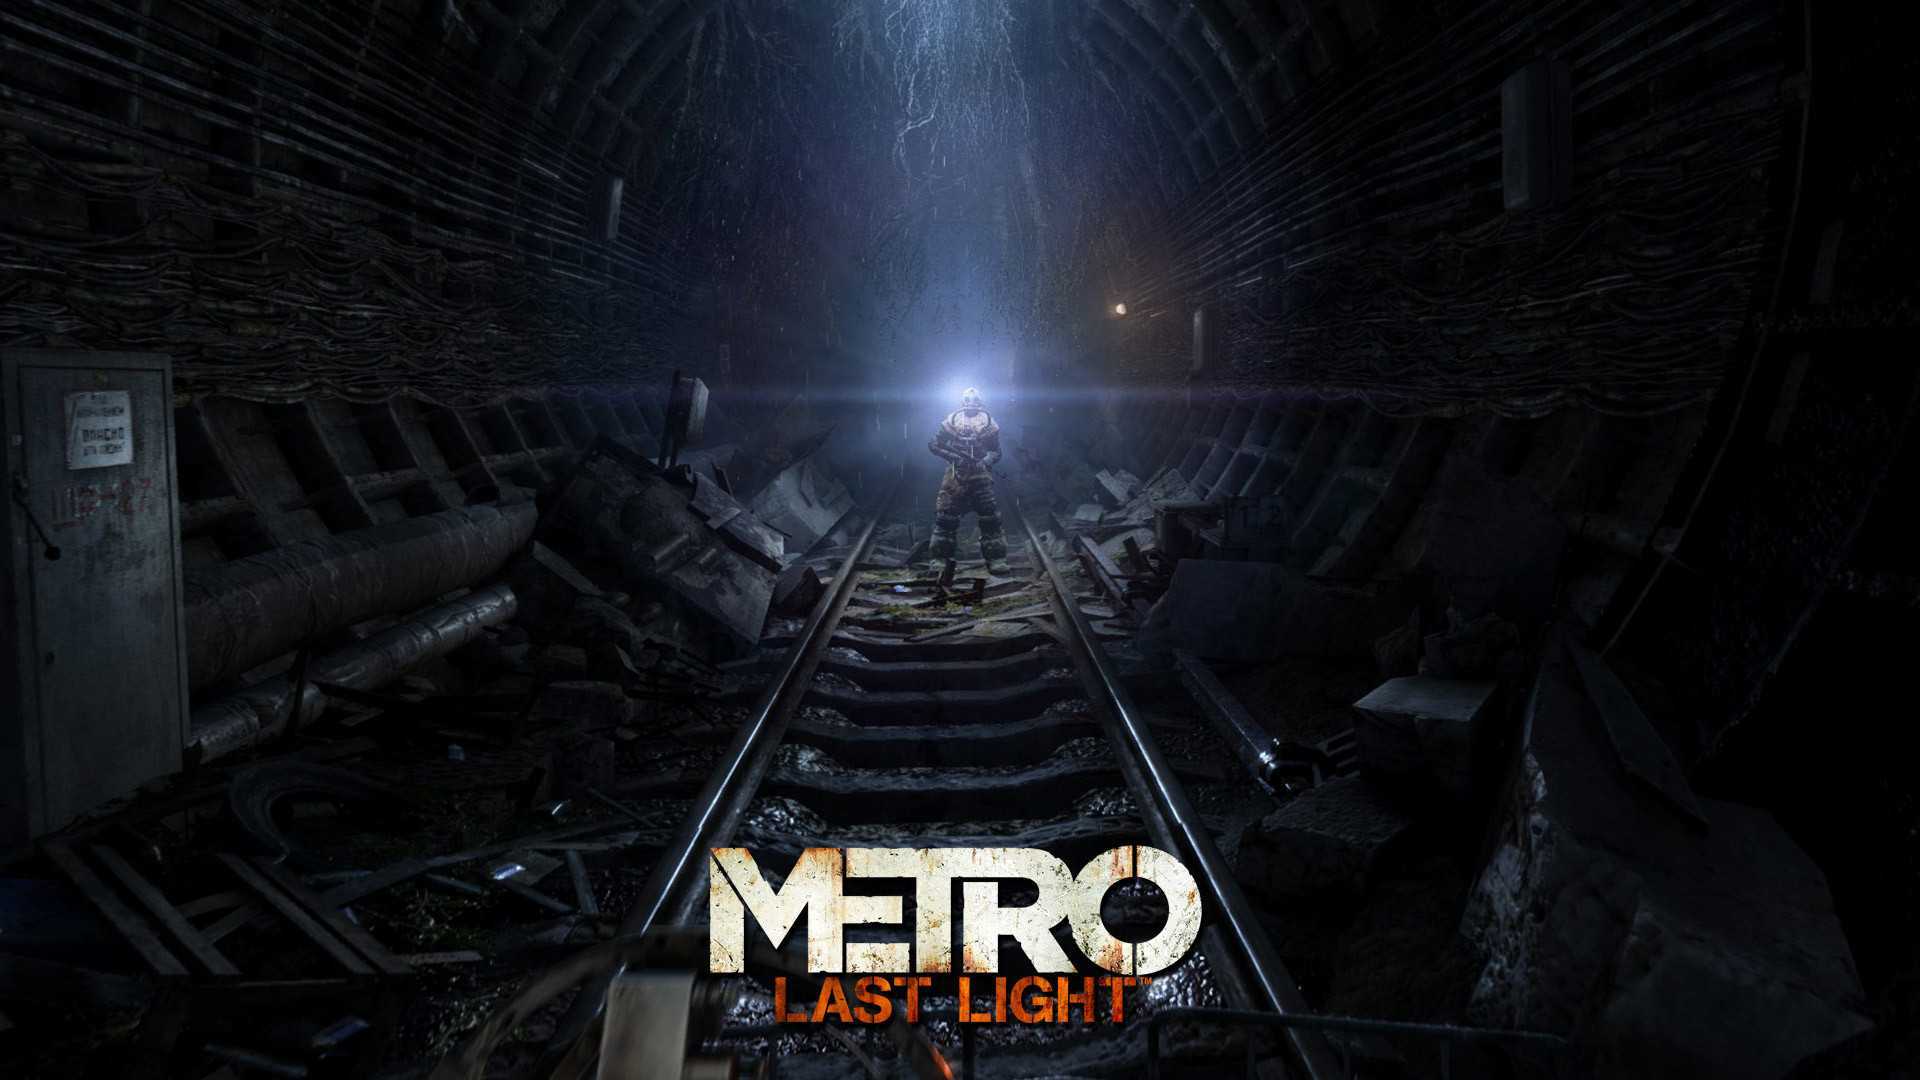 Metro last light redux скачать торрент от механиков со всеми dlc